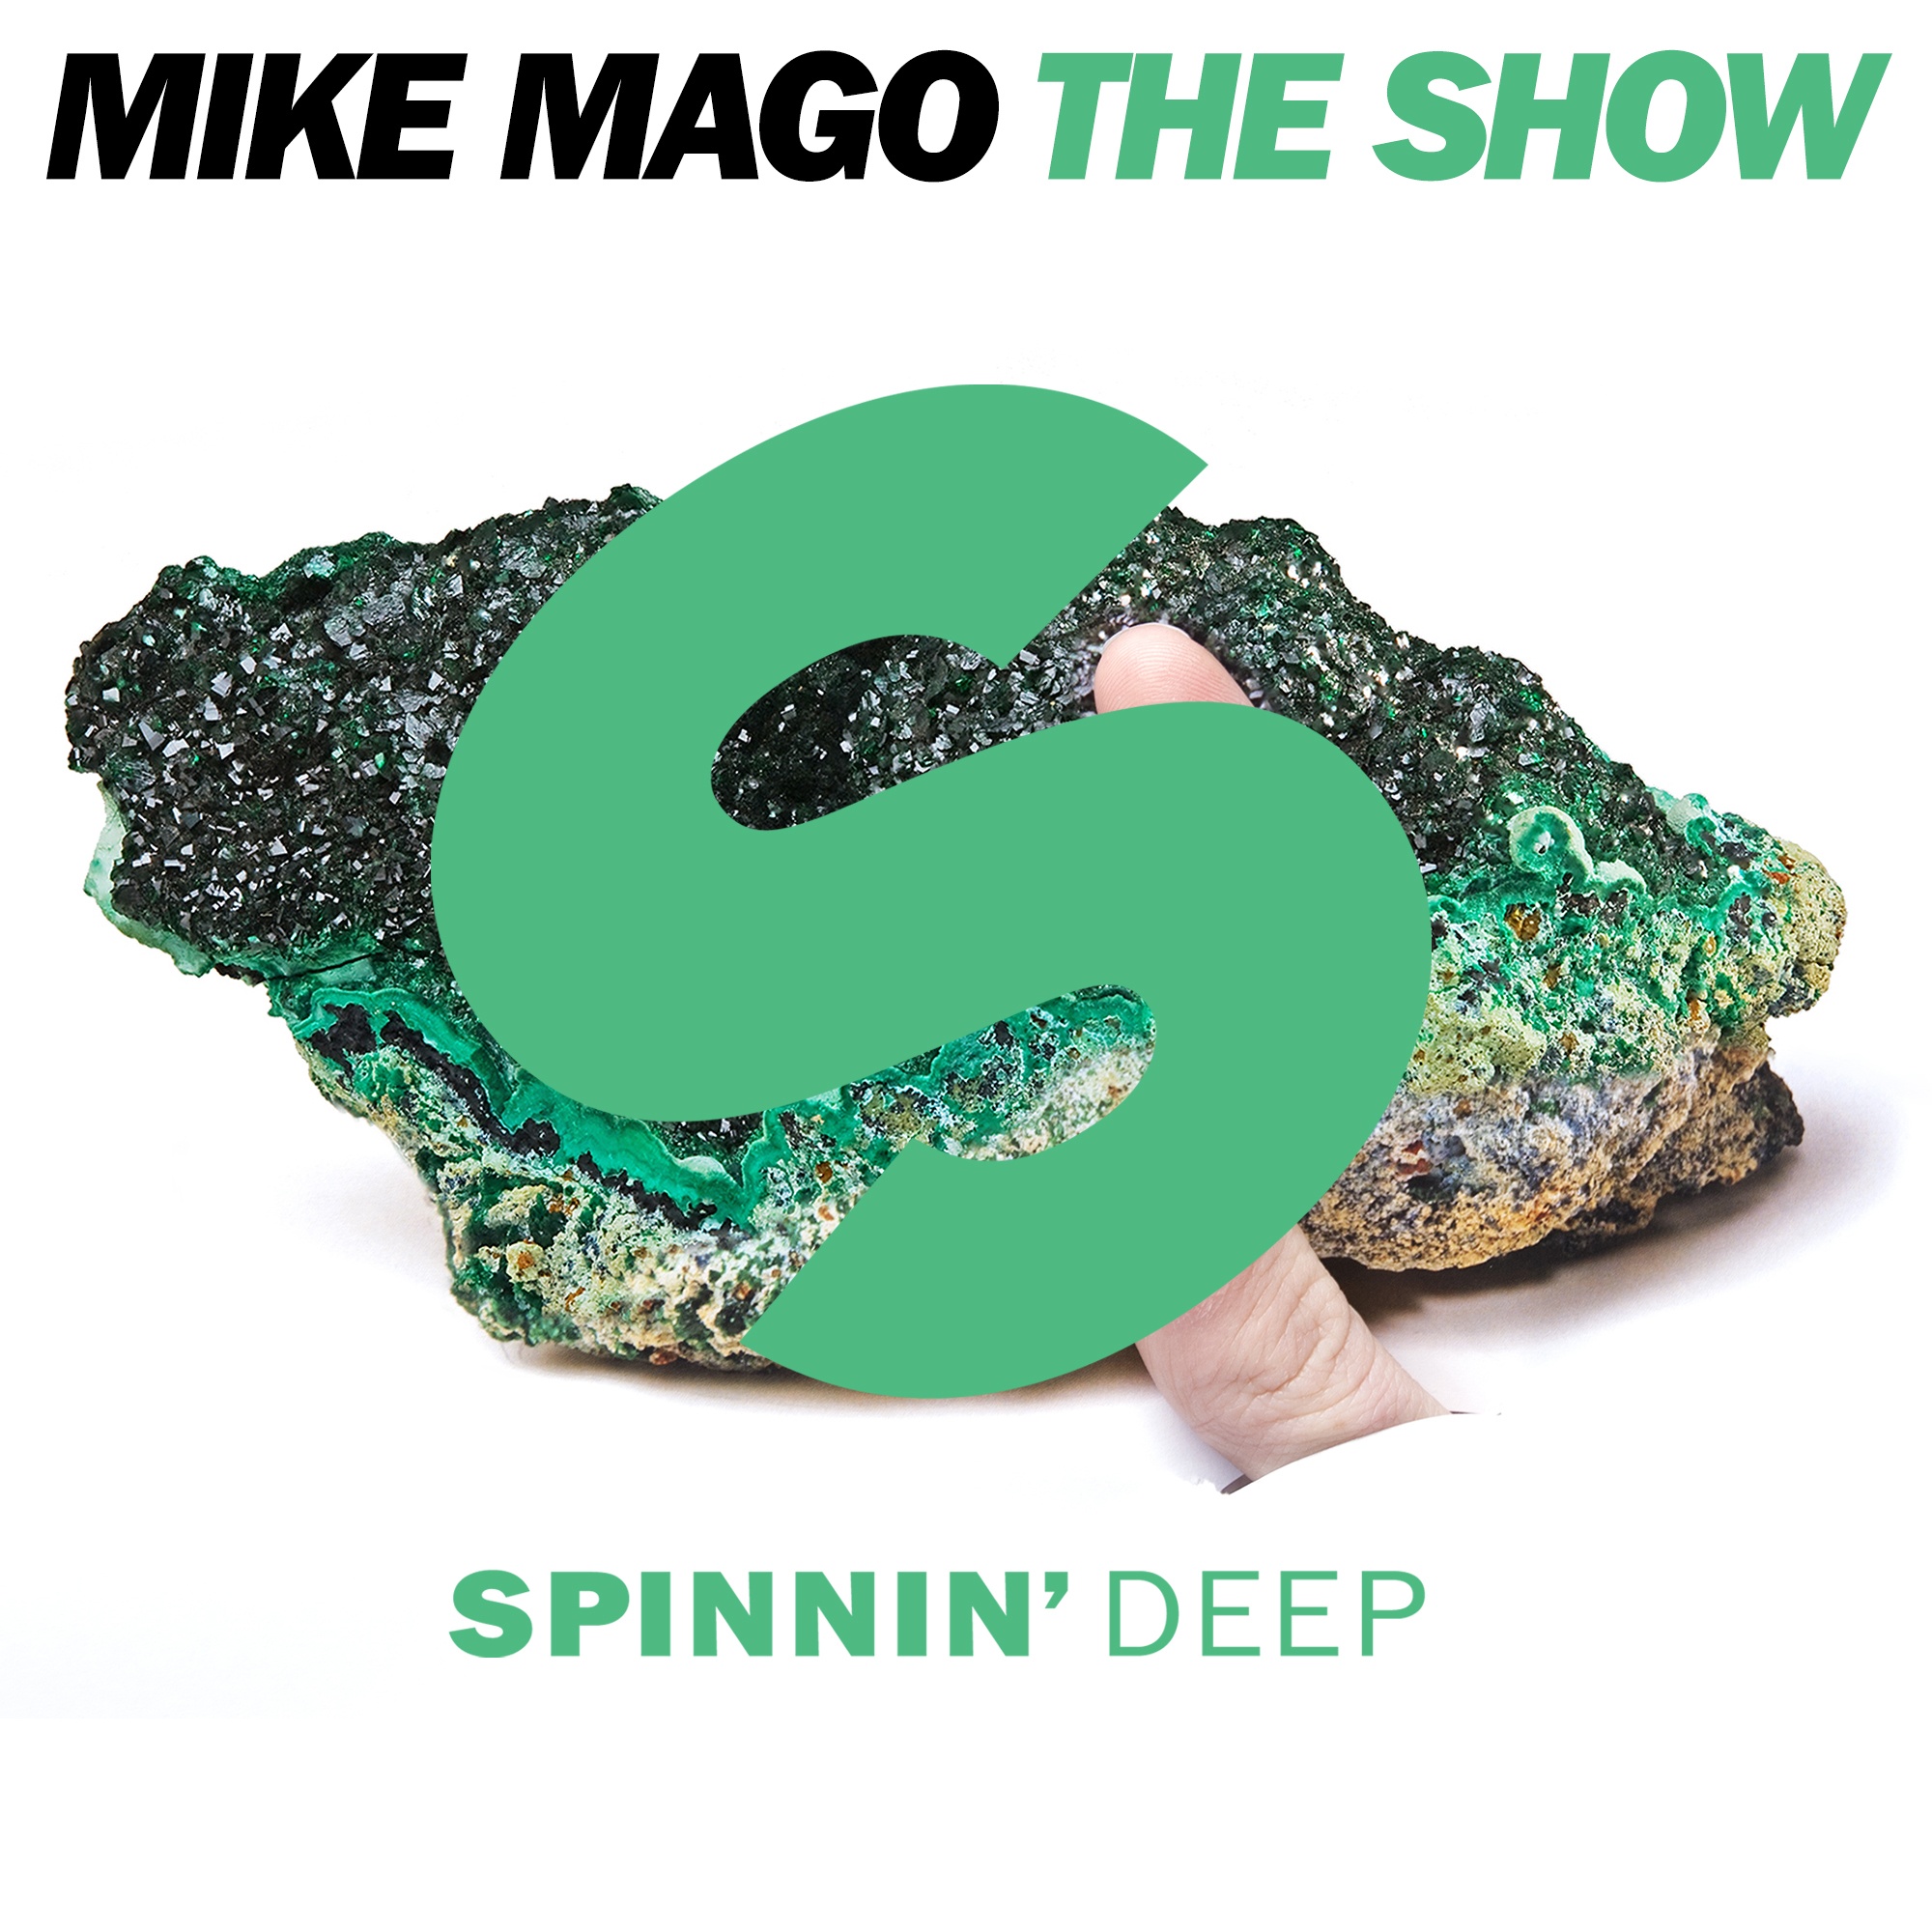 The Show (Original Mix)